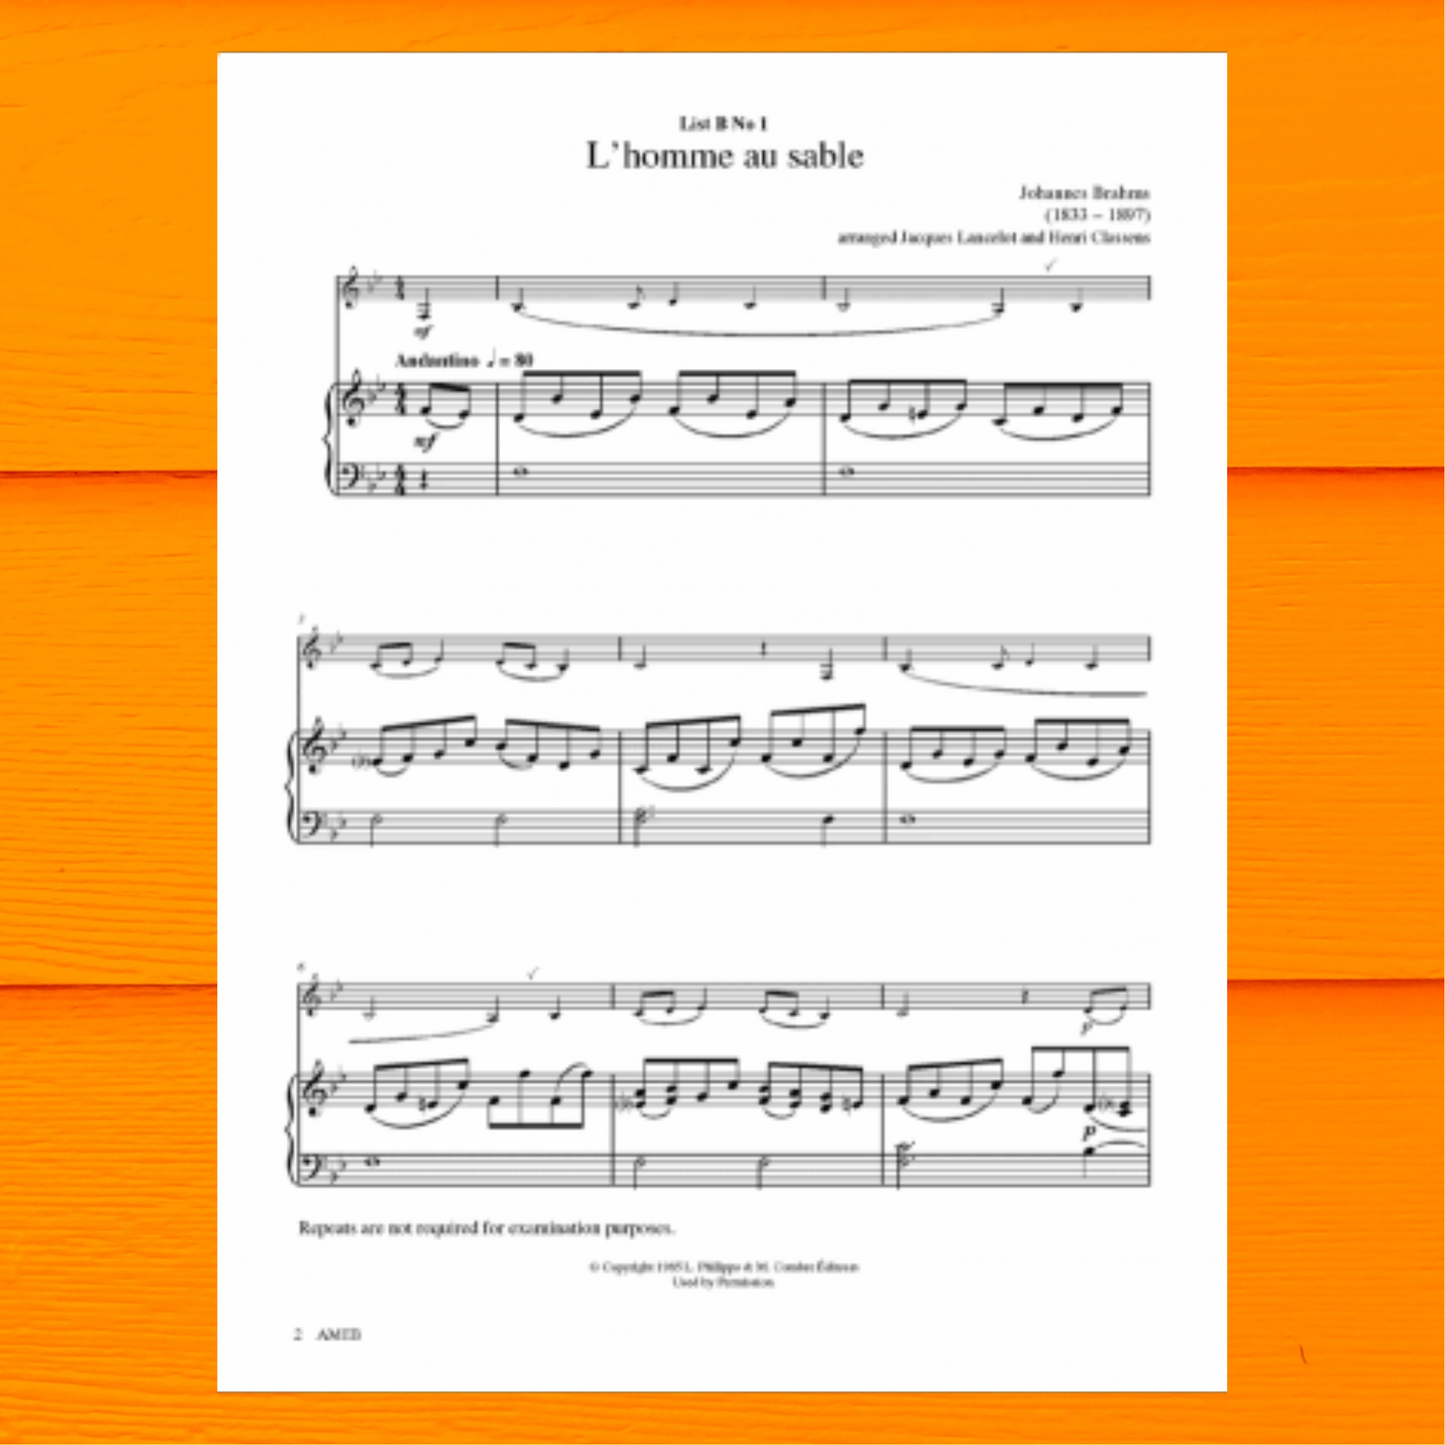 AMEB Clarinet Series 3 - Preliminary Book